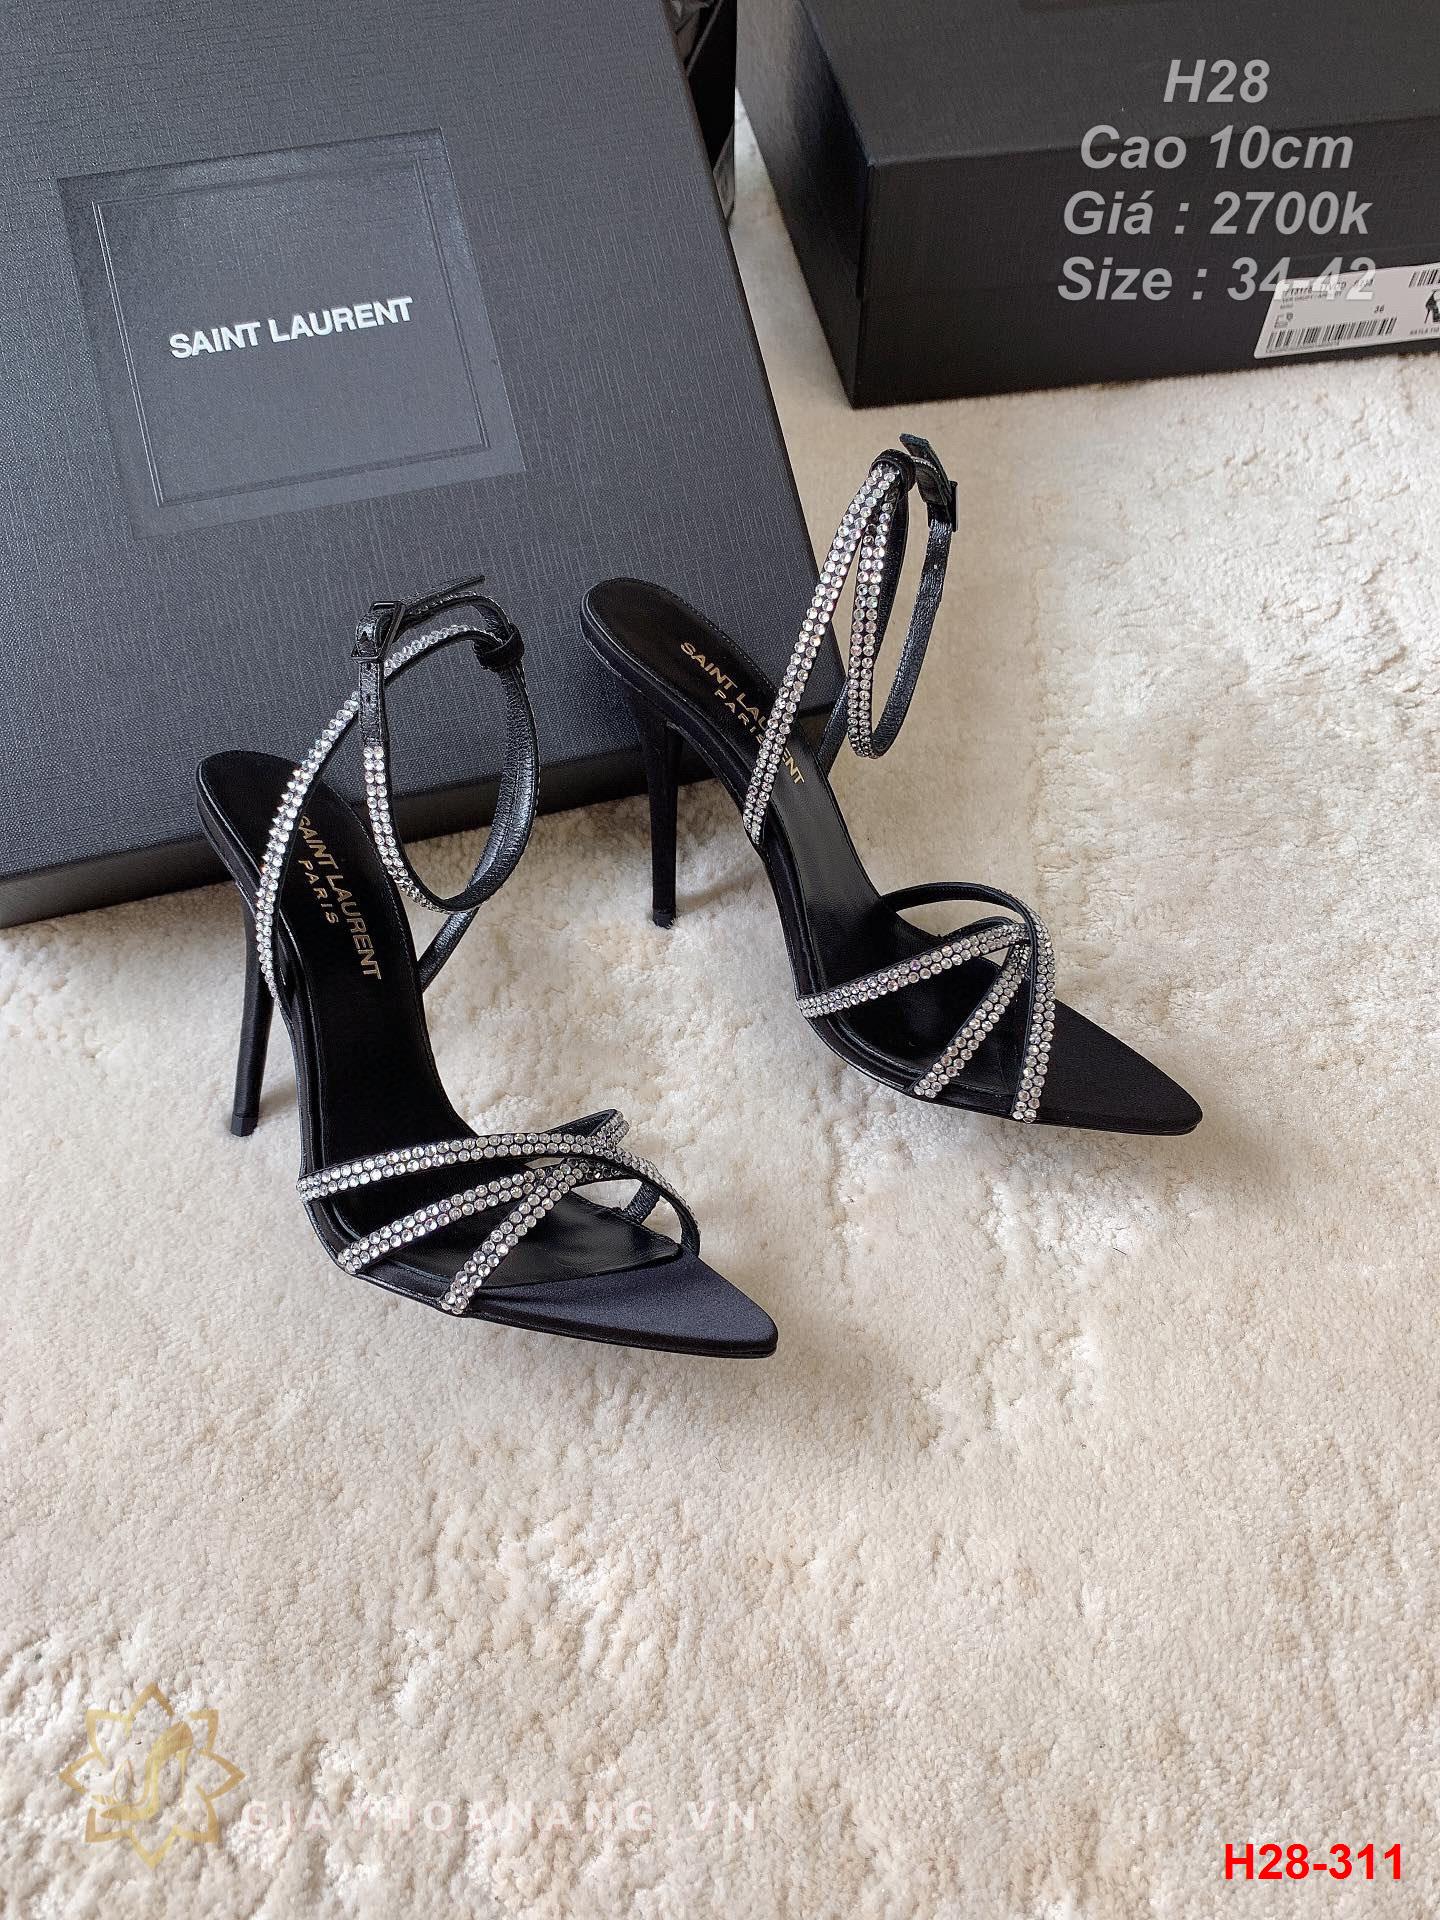 H28-311 Saint Laurent sandal cao 10cm siêu cấp